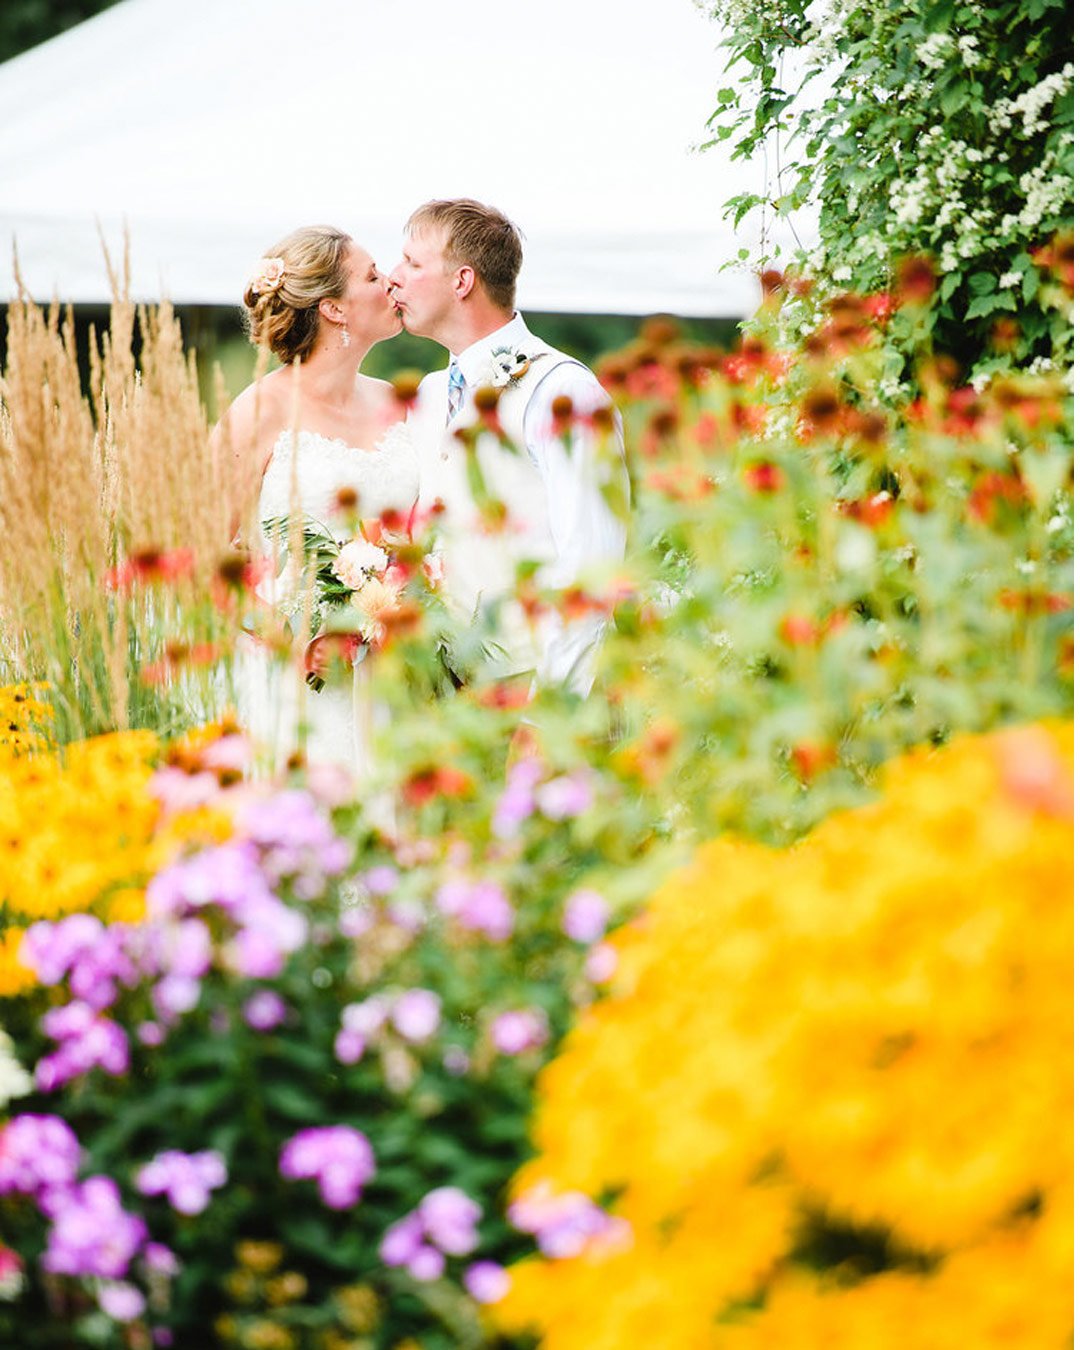 rustic wedding venues in wi barn outdoor bride groom flowers